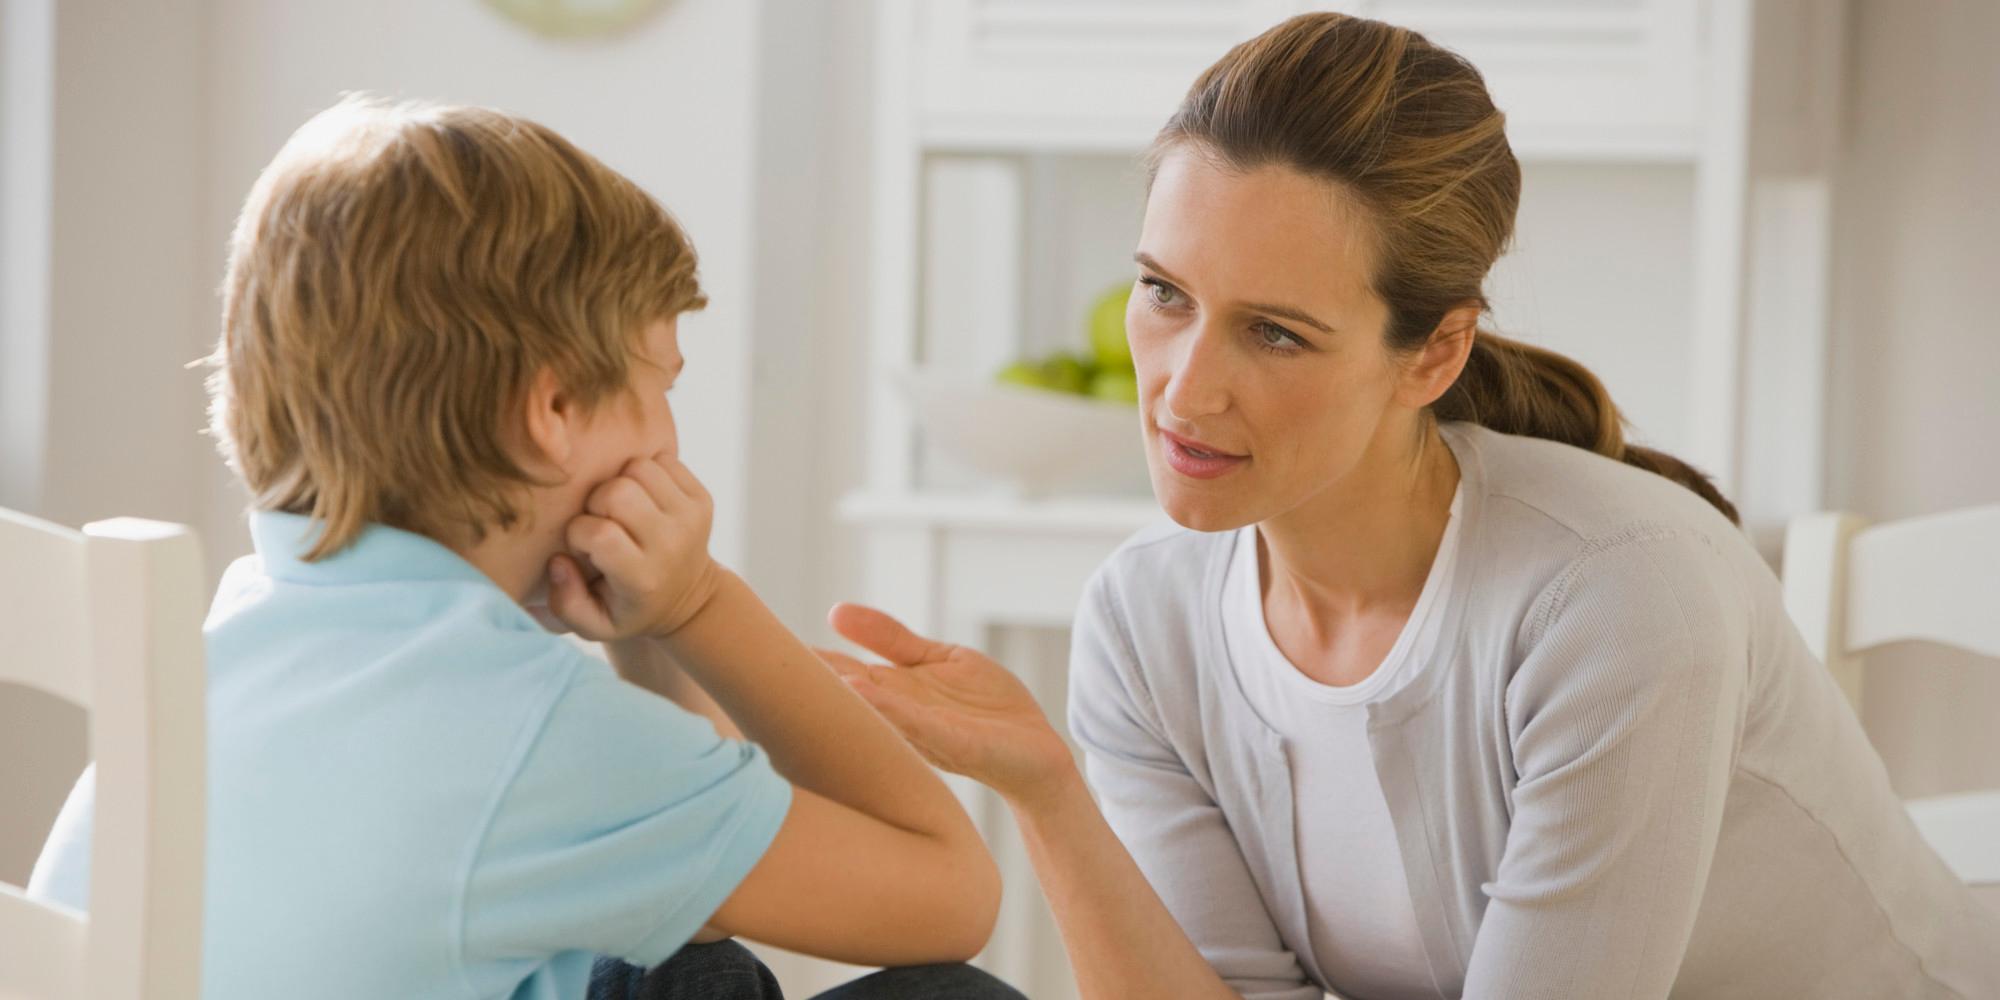 Odgoj djece: Roditelj treba imati smiren ton i direktan pogled